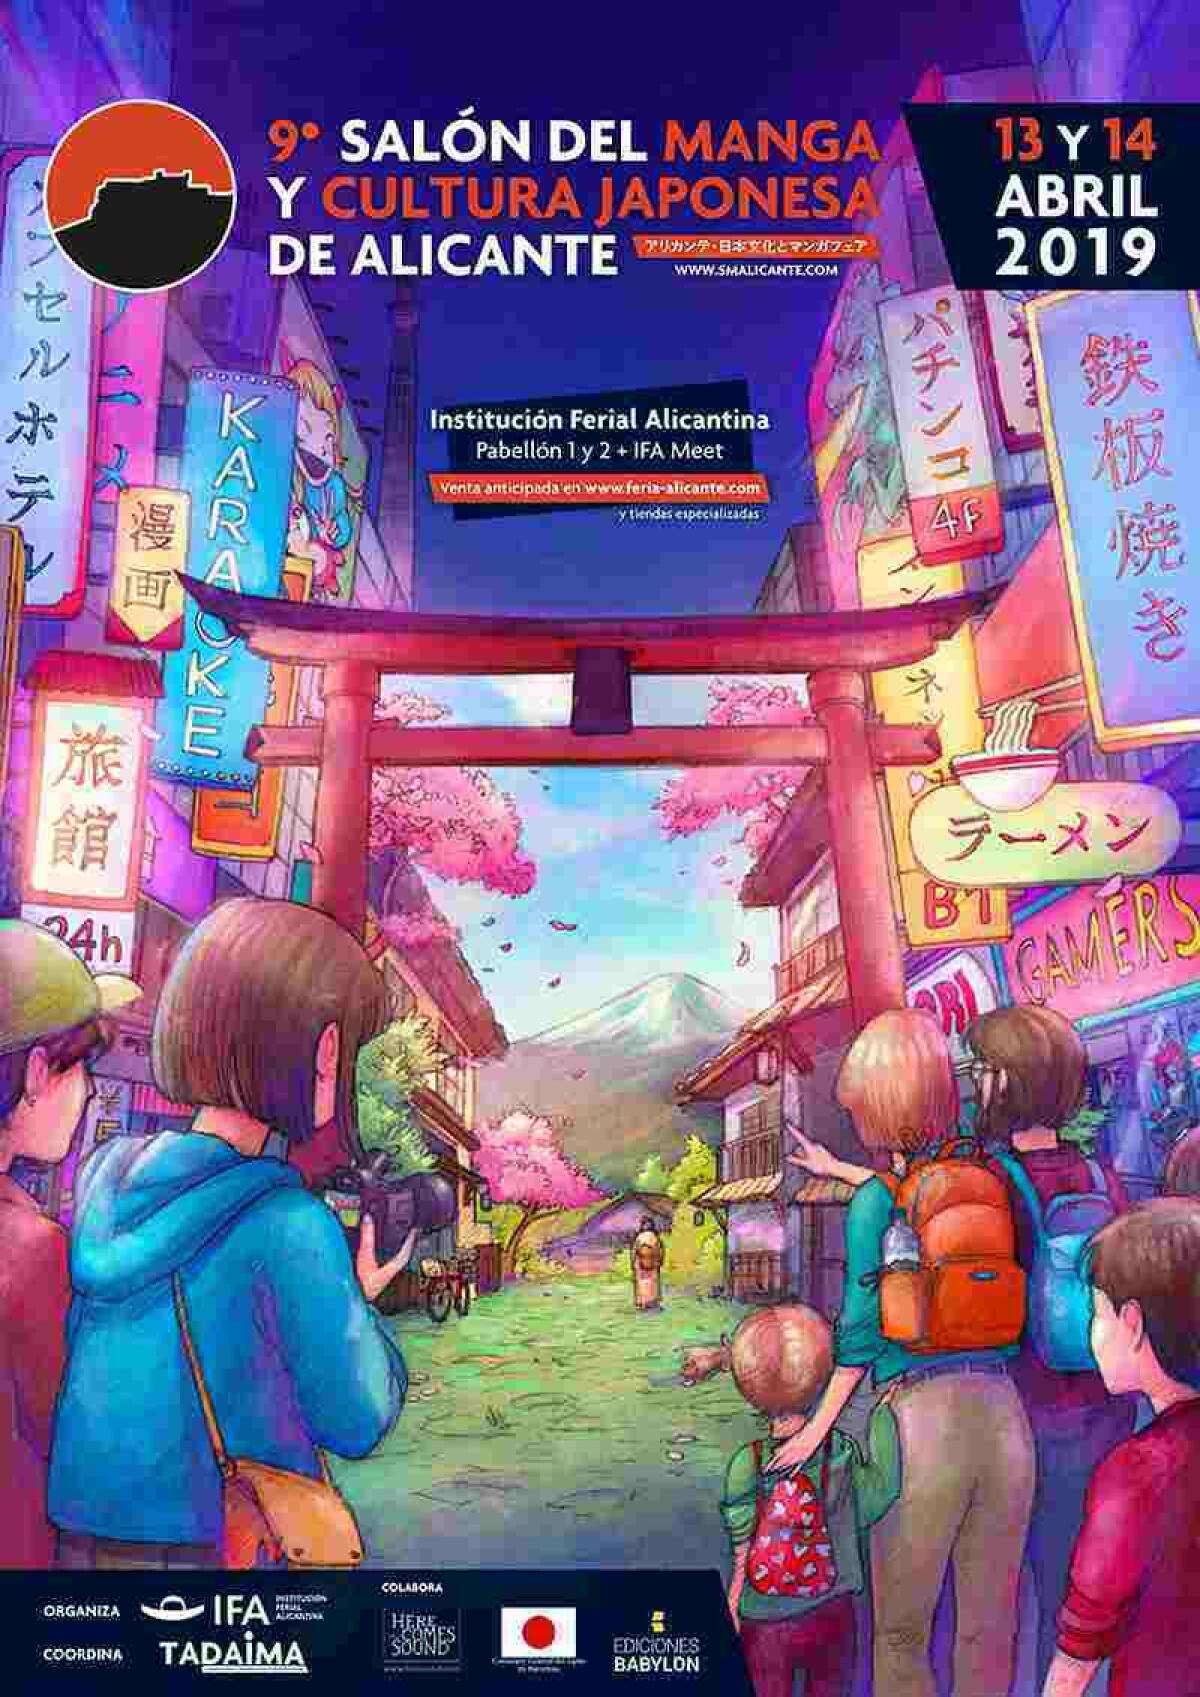 Benidorm // La concejalía de Juventud fleta un autobús para visitar el Salón del Manga y cultura japonesa de Alicante